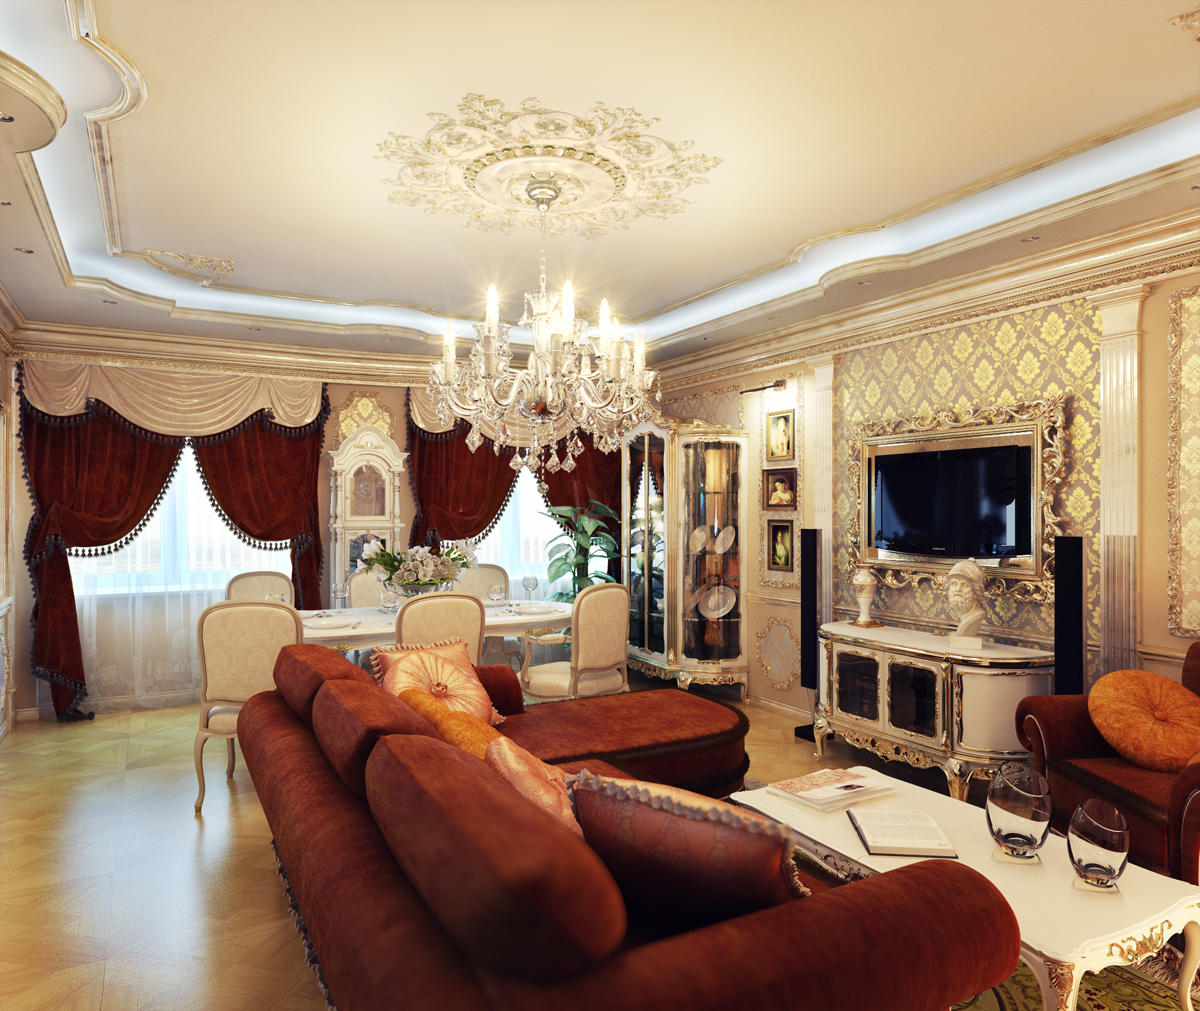 Гостиные в классическом стиле делают в белом или бежевом стиле, дополняя интерьер мебелью яркого цвета